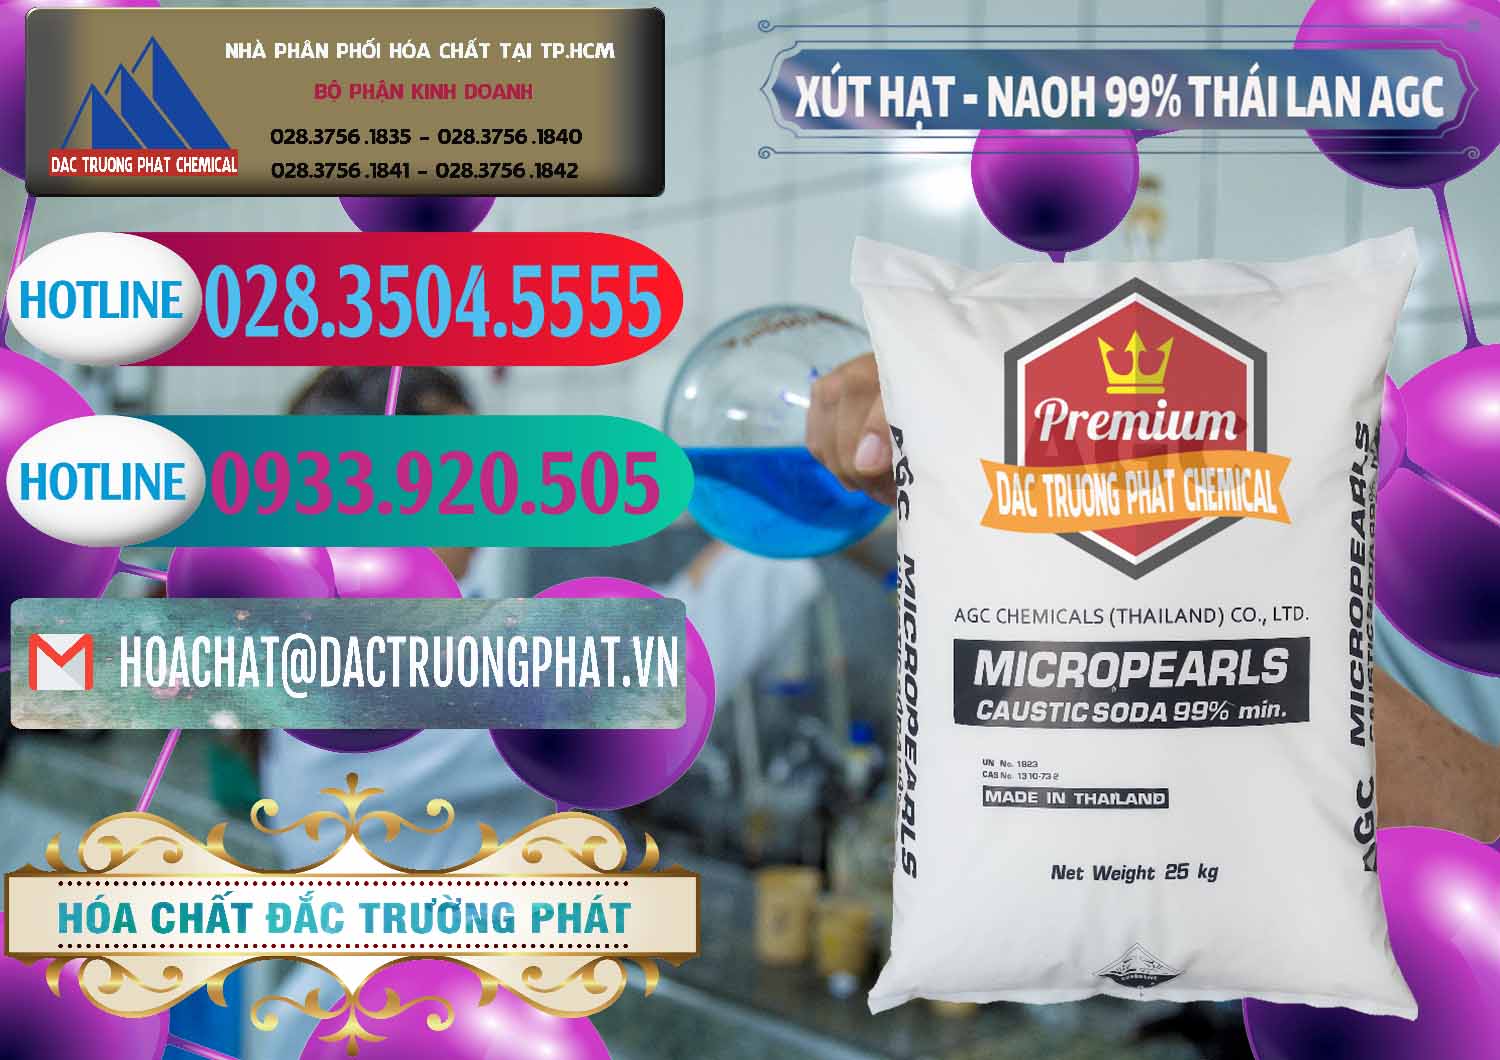 Công ty chuyên bán & cung cấp Xút Hạt - NaOH Bột 99% AGC Thái Lan - 0168 - Cty chuyên phân phối ( bán ) hóa chất tại TP.HCM - truongphat.vn